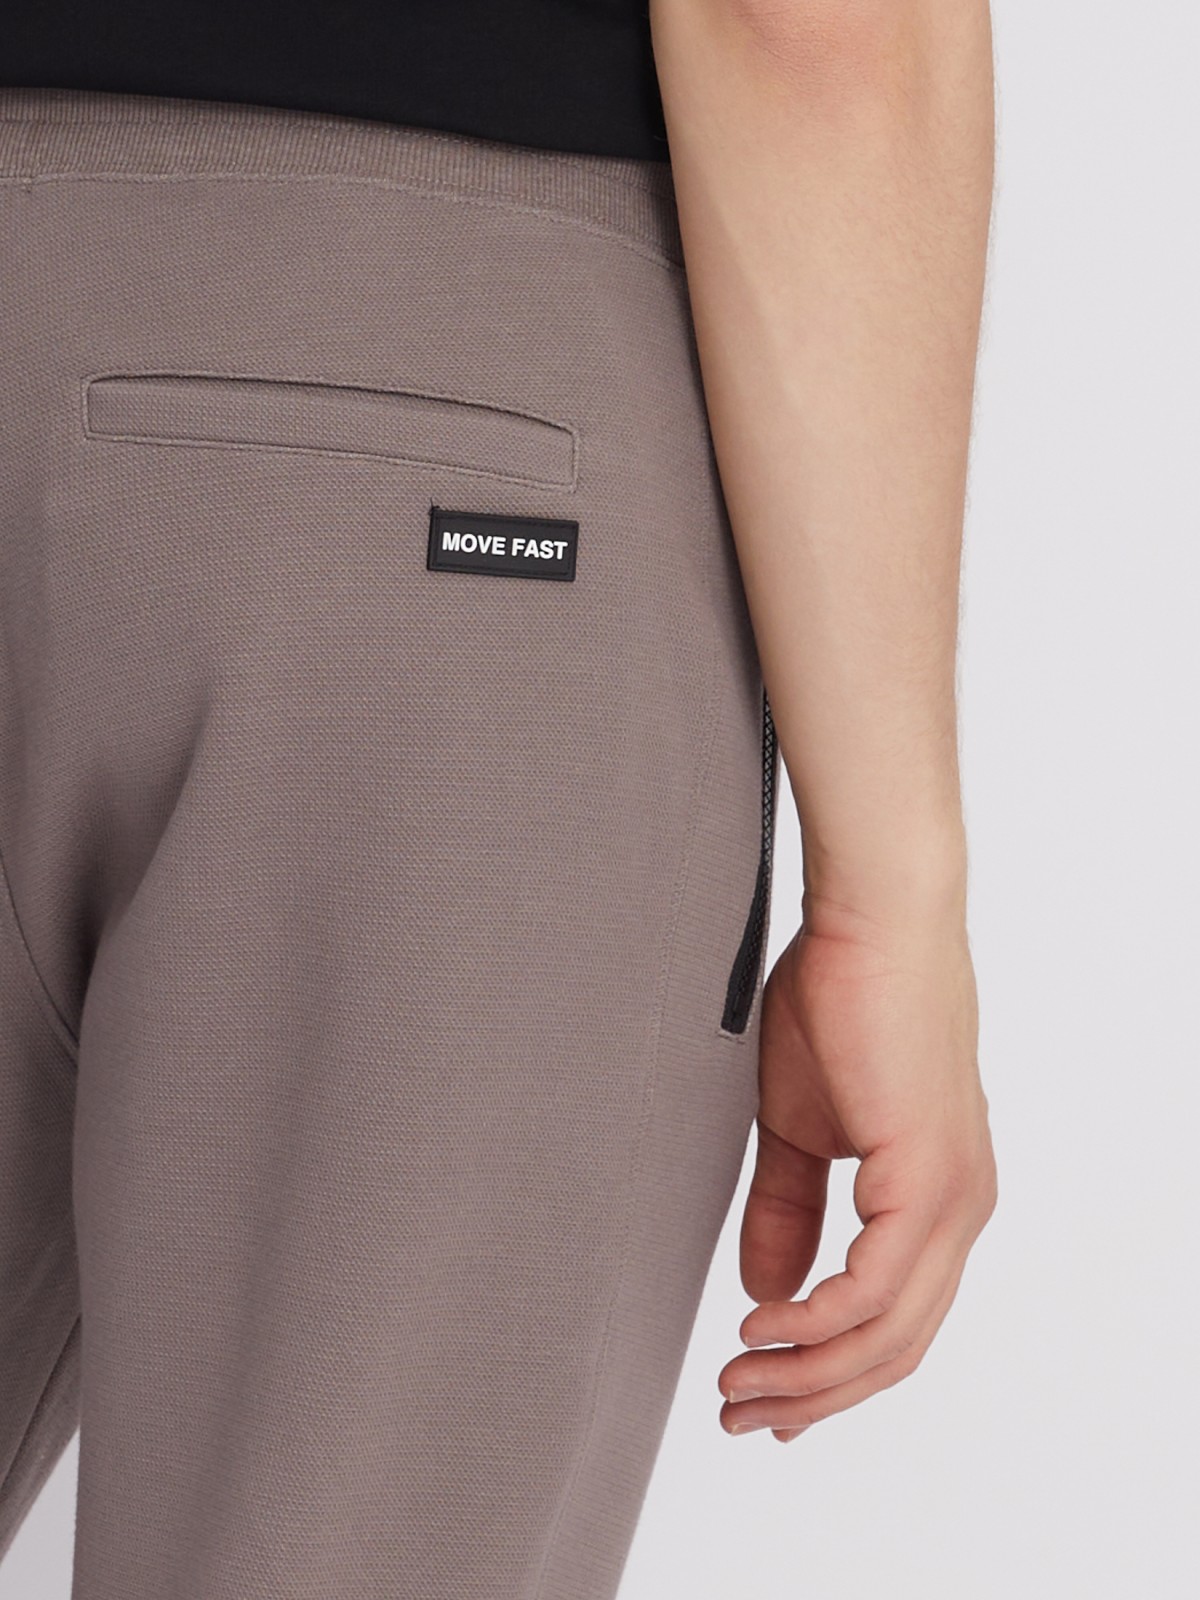 Трикотажные брюки-джоггеры в спортивном стиле zolla 213317679023, цвет коричневый, размер S - фото 5